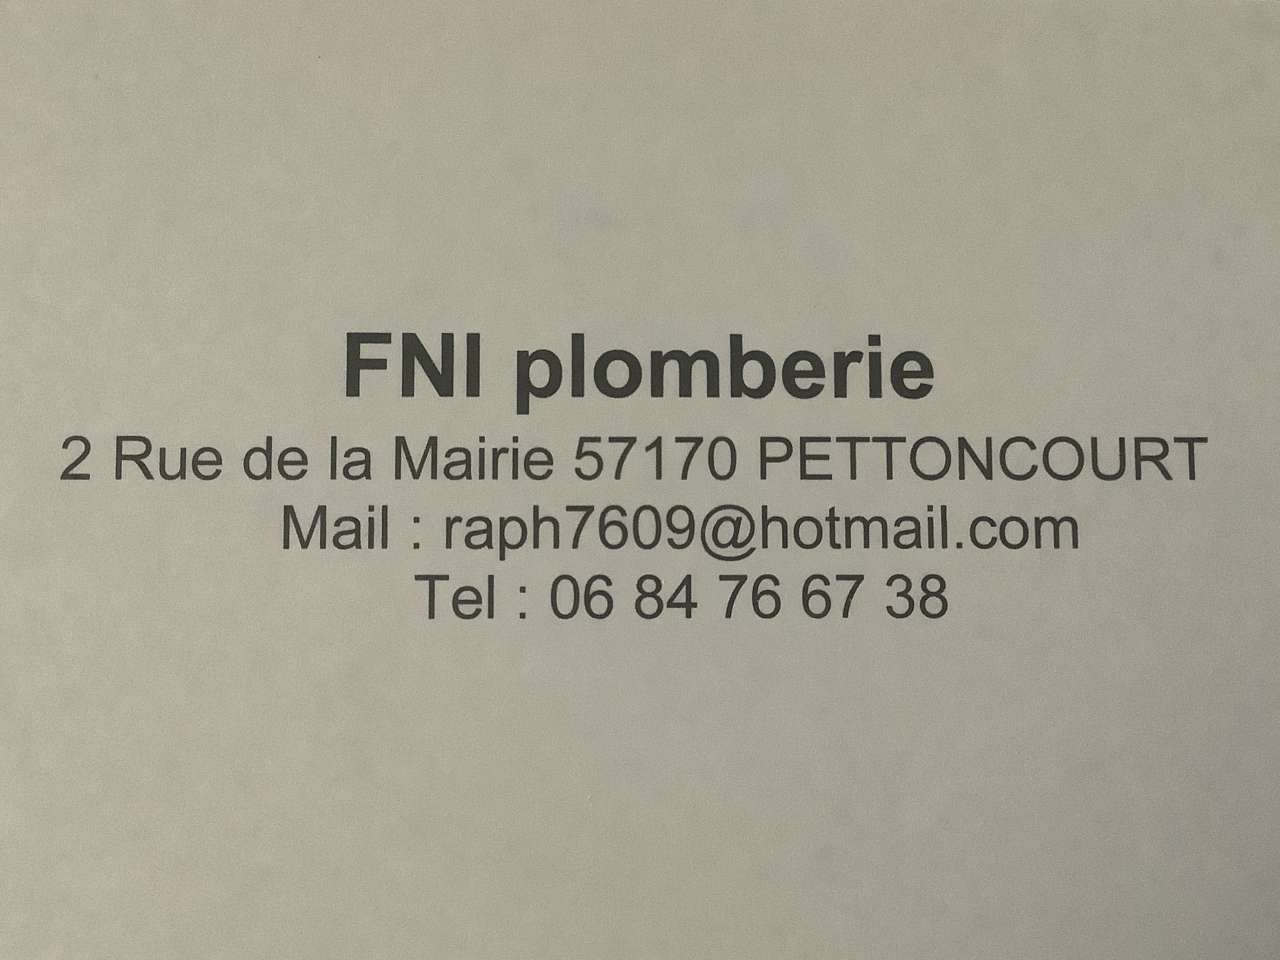 FNI Plomberie - Plombier à Pettoncourt (57170) - Adresse et téléphone sur  l'annuaire Hoodspot